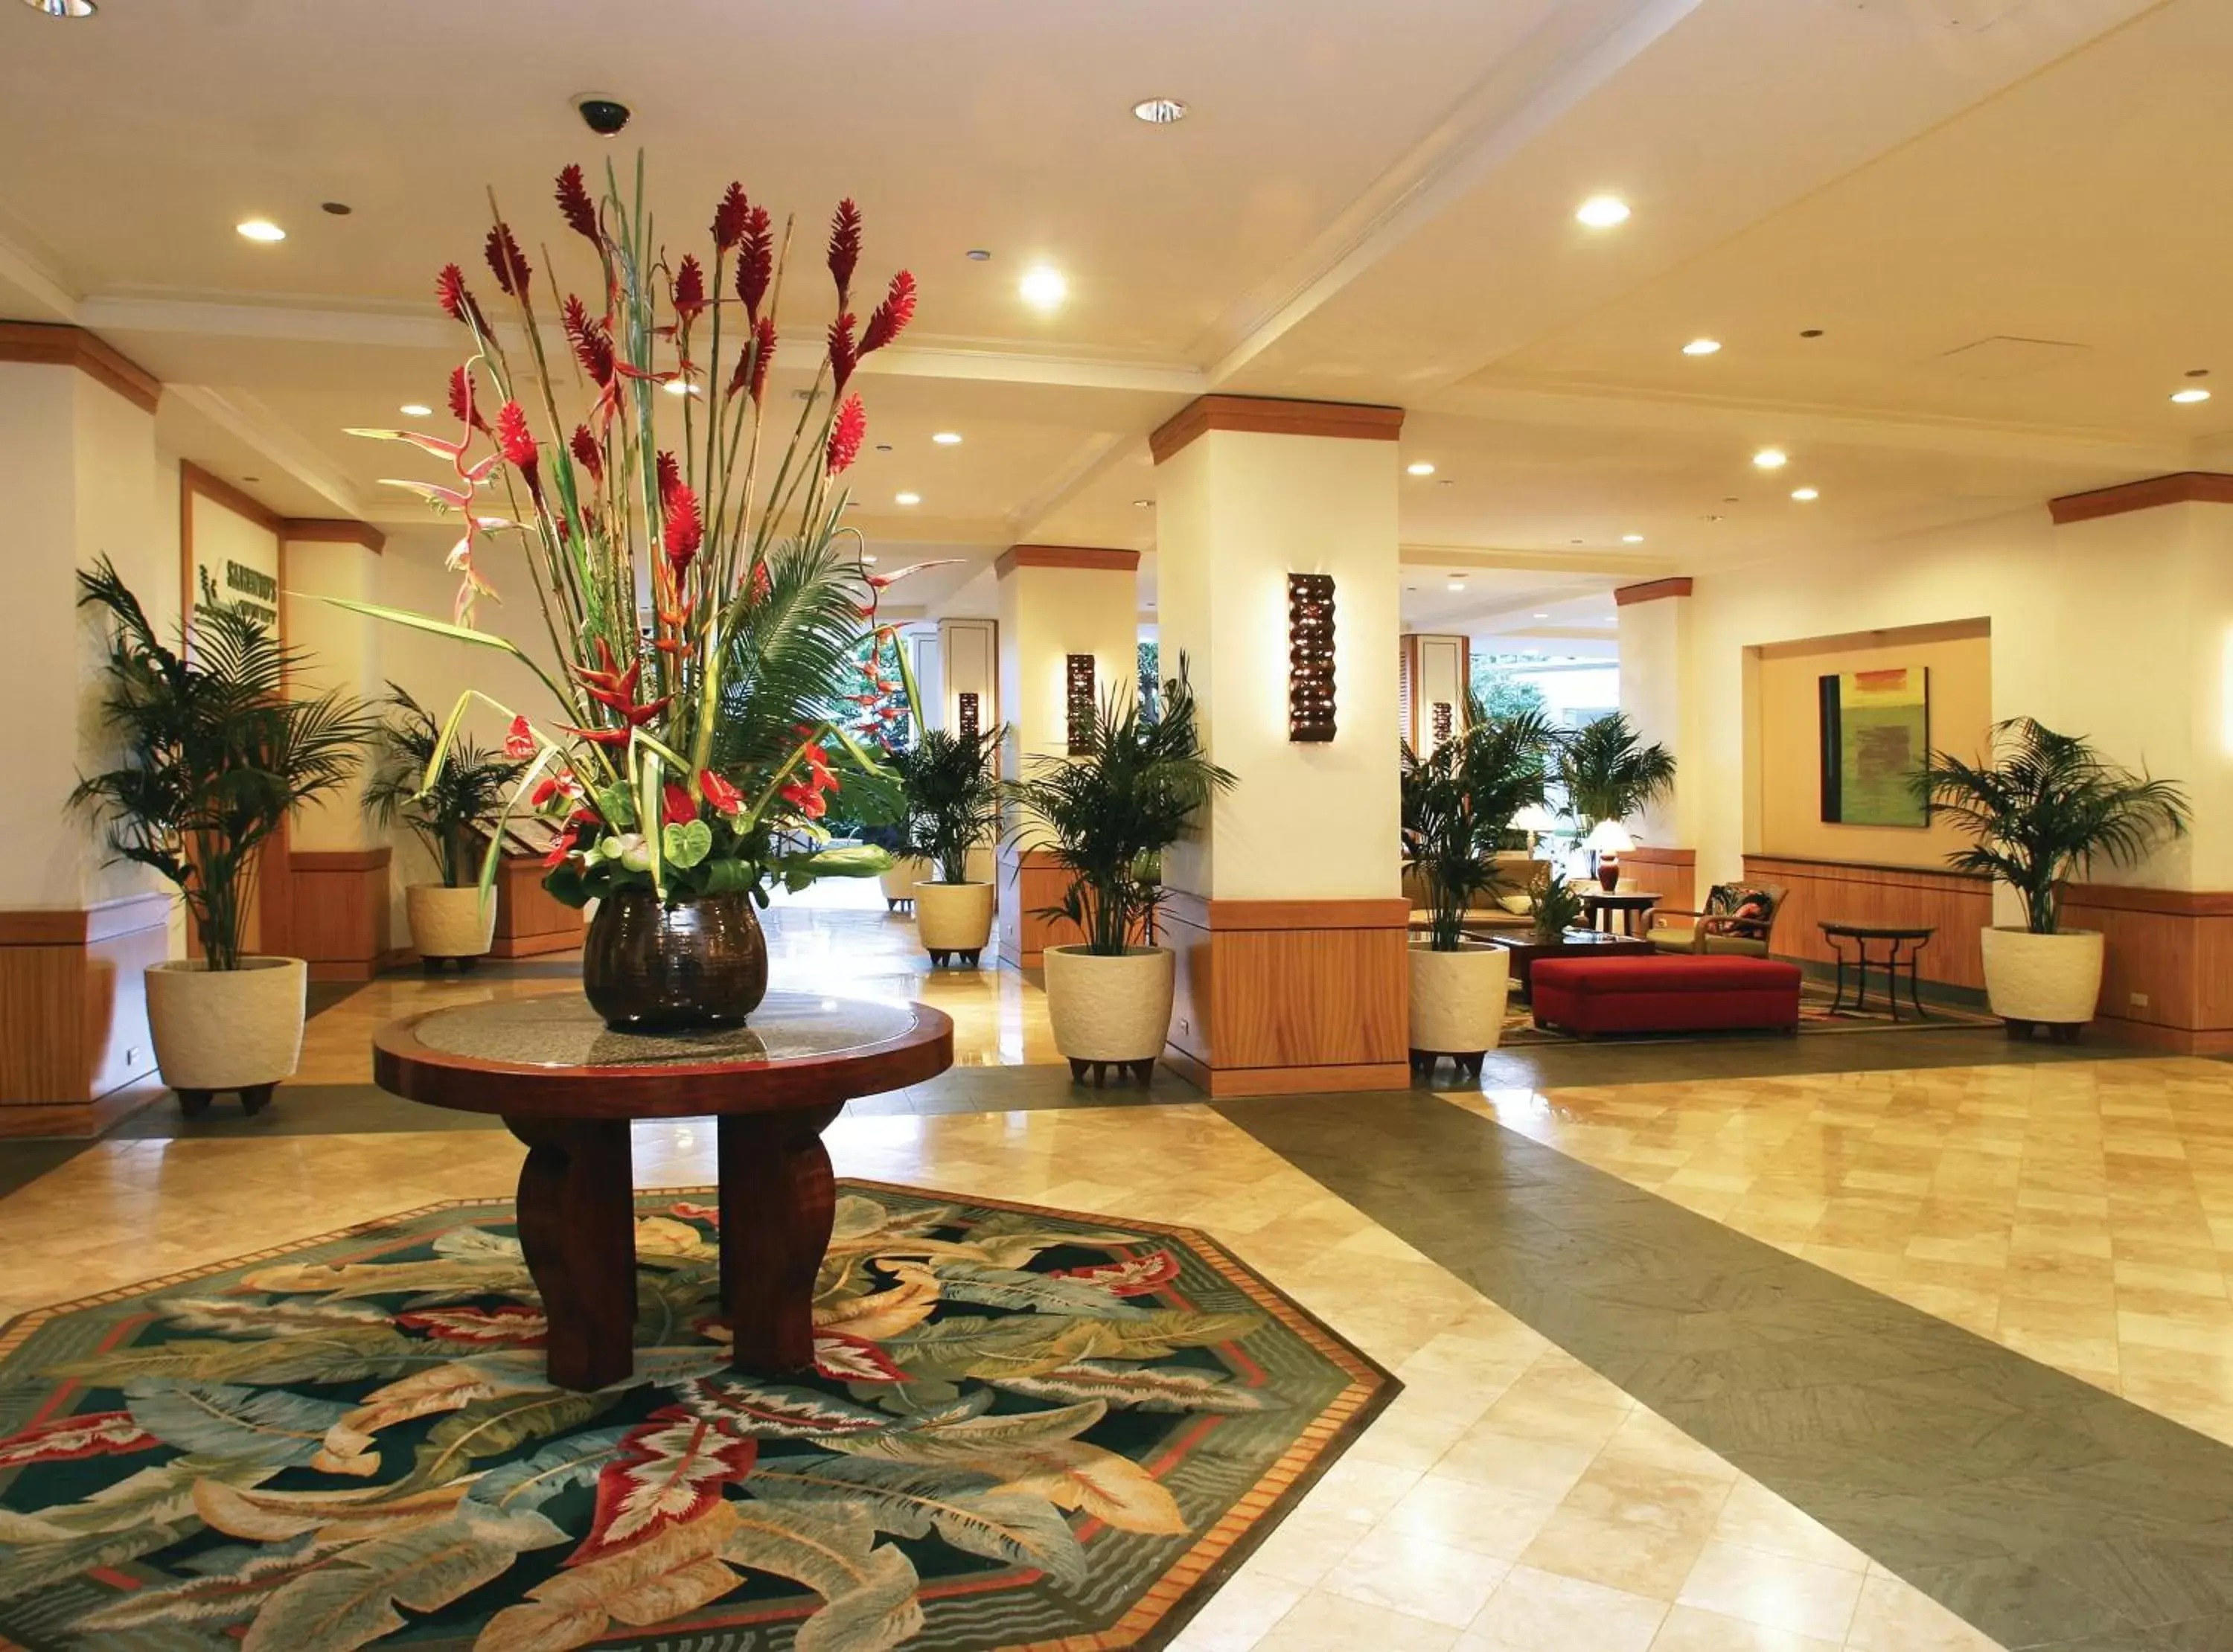 Lobby or reception, Lobby/Reception in Waikiki Marina Resort at the Ilikai